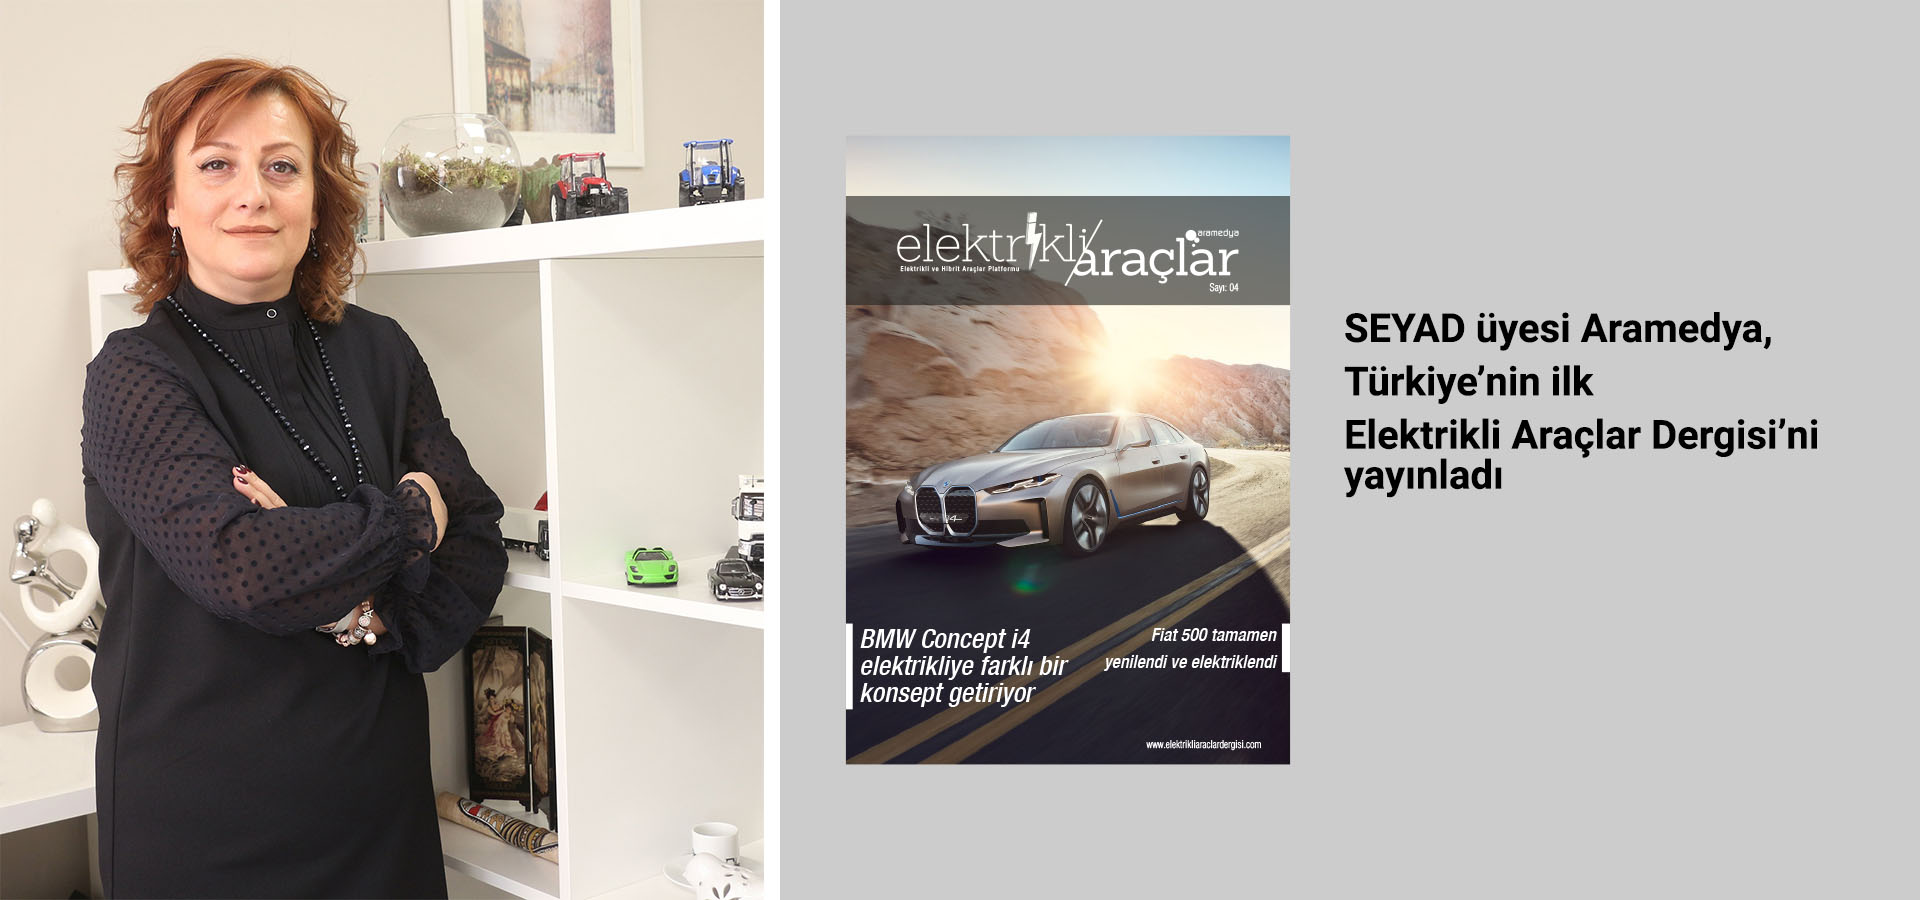 SEYAD üyesi Aramedya, Türkiye’nin ilk Elektrikli Araçlar Dergisi’ni yayınladı